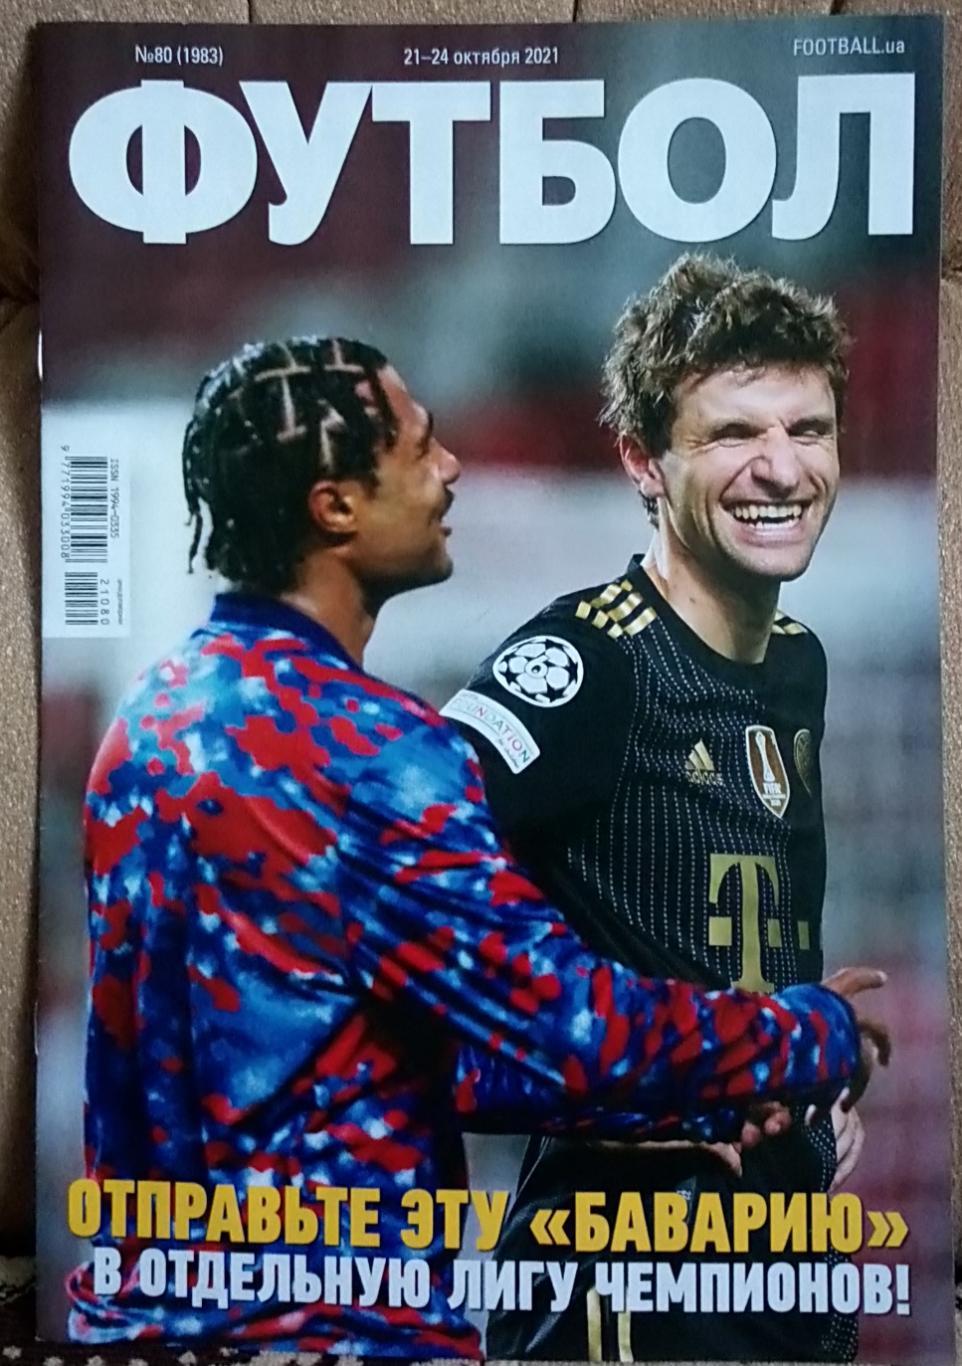 Журнал. Футбол. N 80/2021.Постер Роналдо.